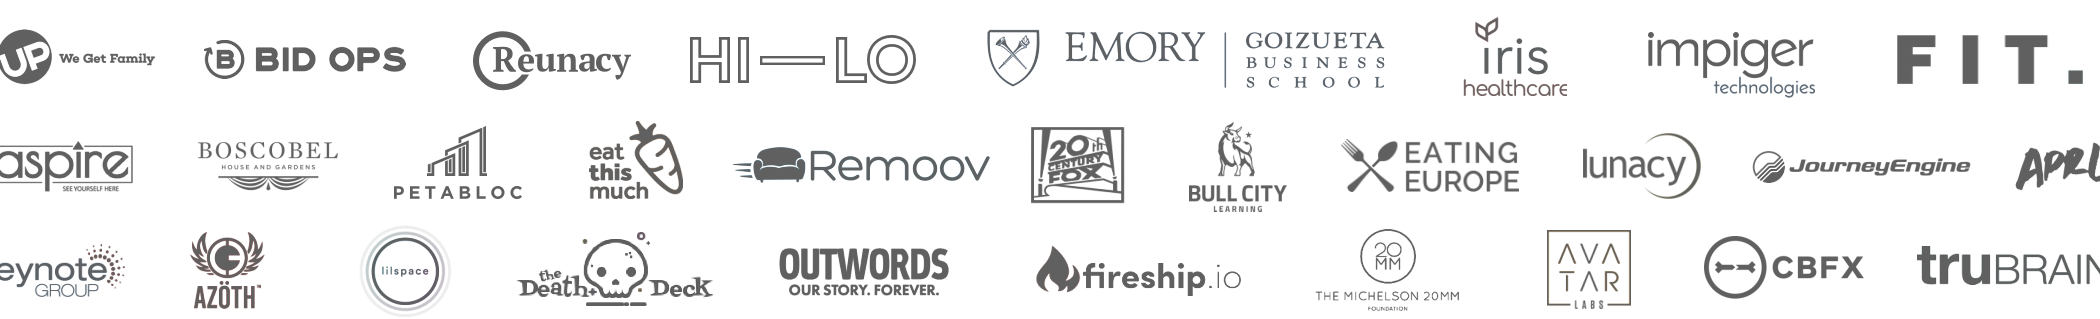 Client Logos Map & Fire